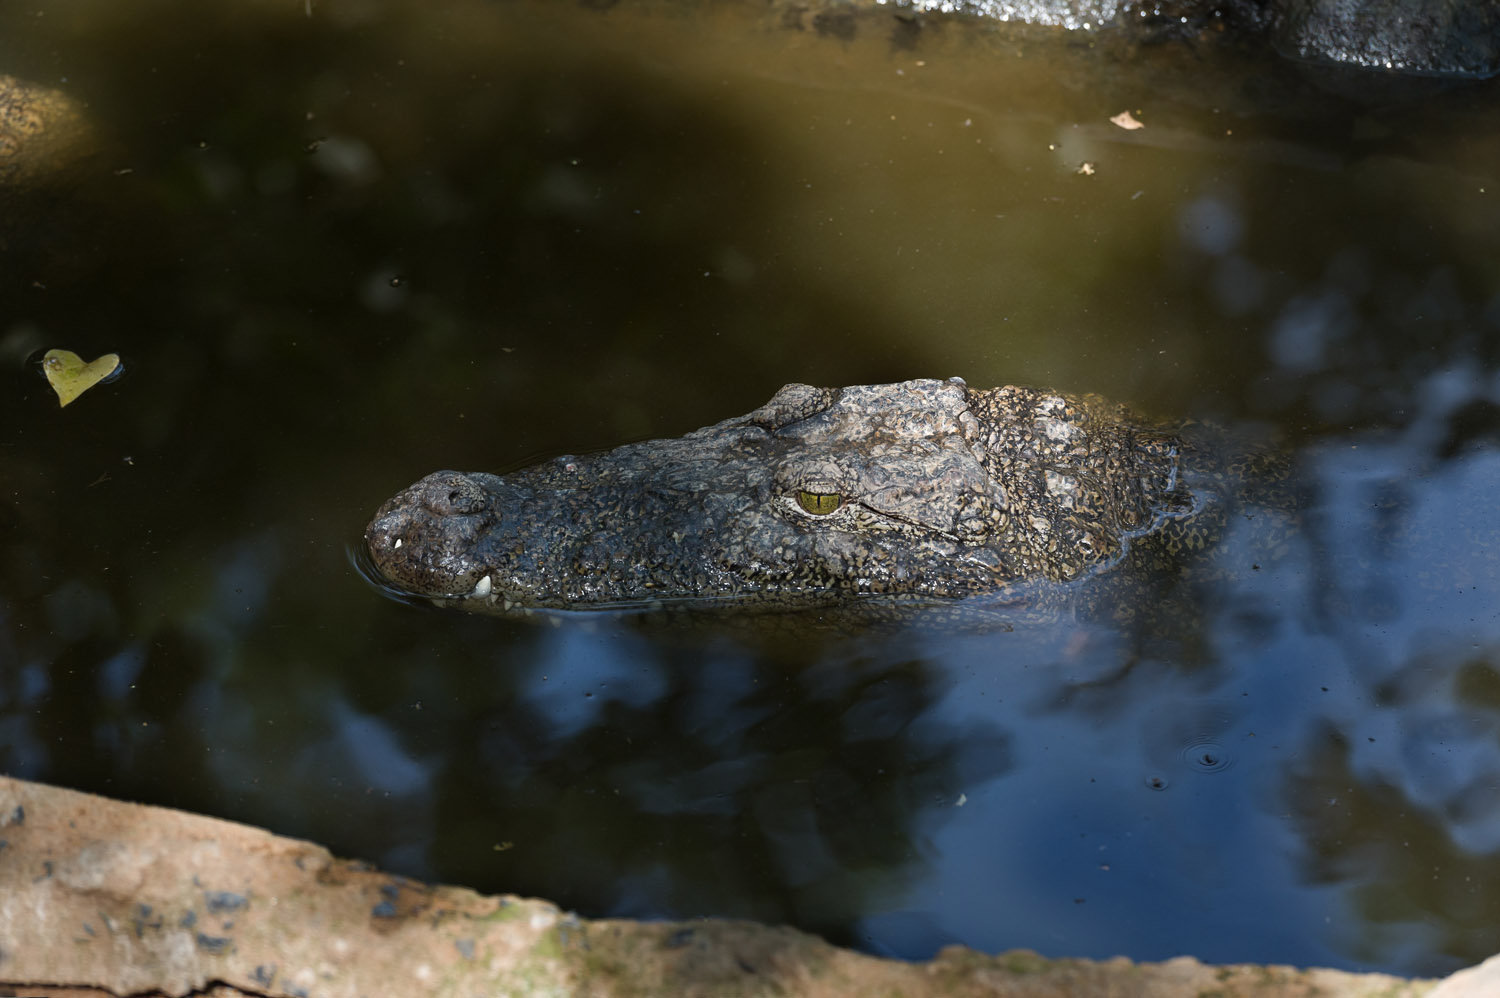 Nile Crocodile, Cholamandal village, Tamil Nadu